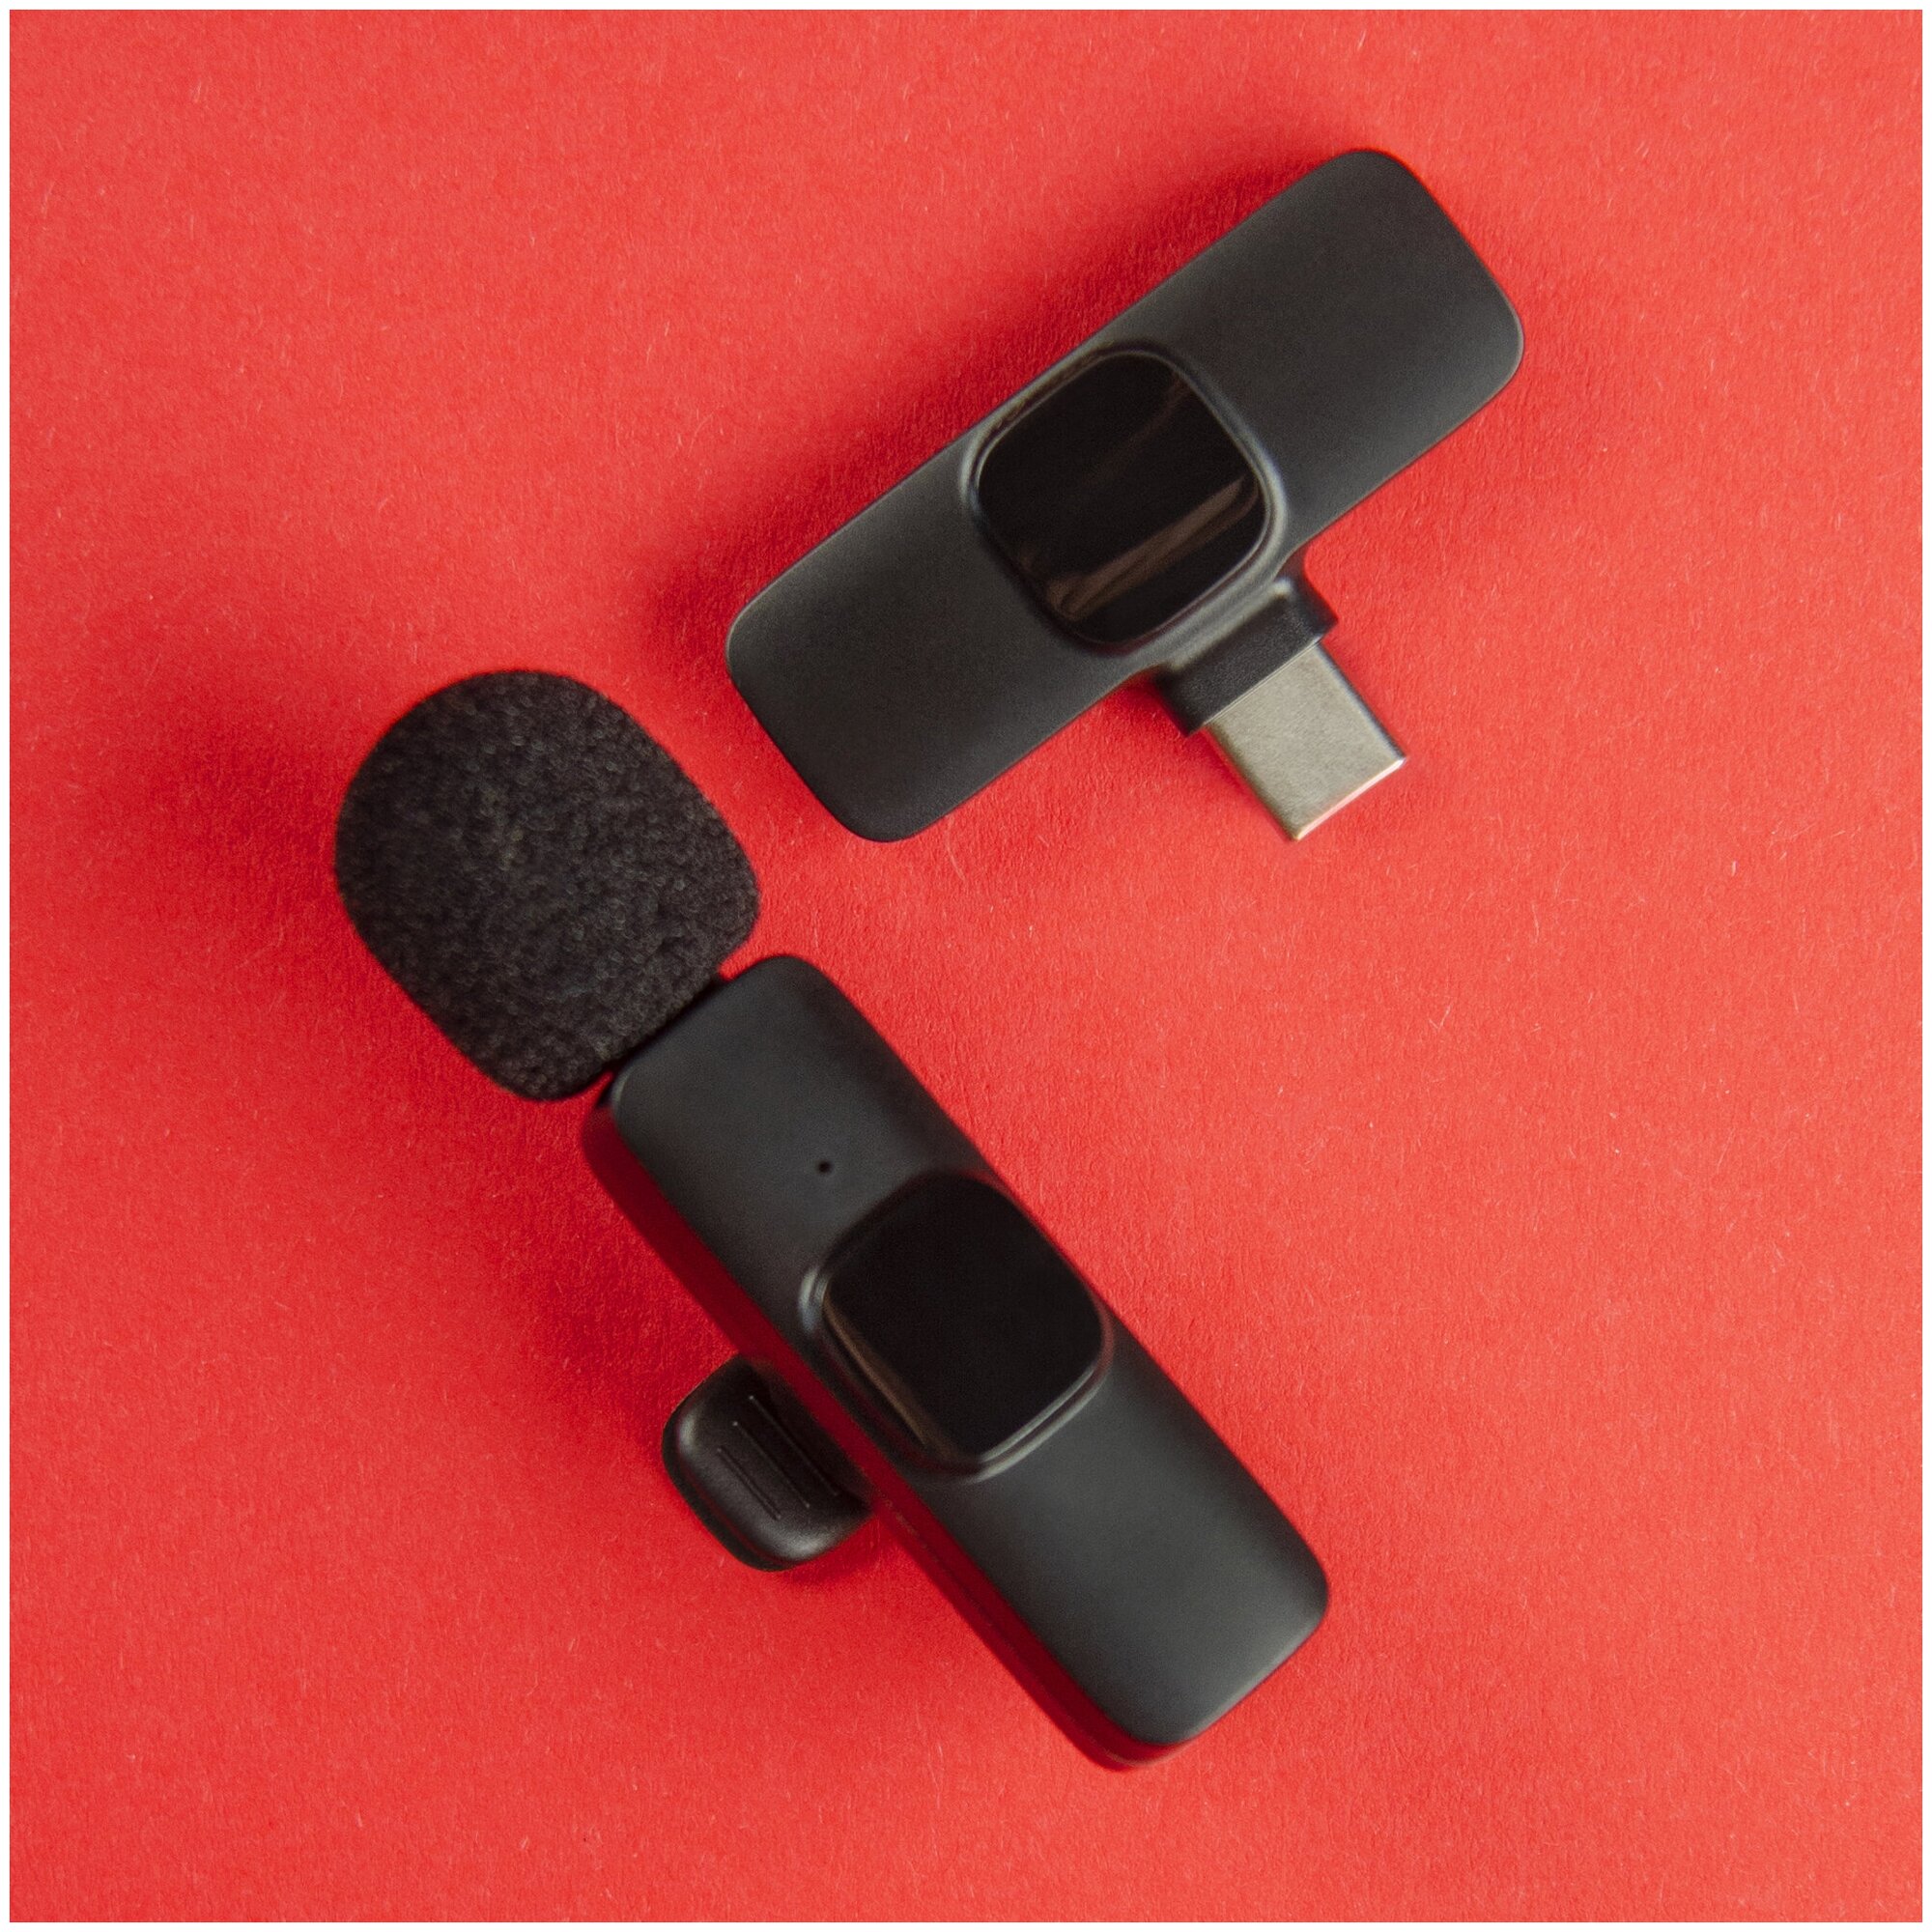 Микрофон петличный беспроводной для android WALKER WRM-51 пелтичка для телефона для записи видео блога стрима звука с разъемом type-c черный